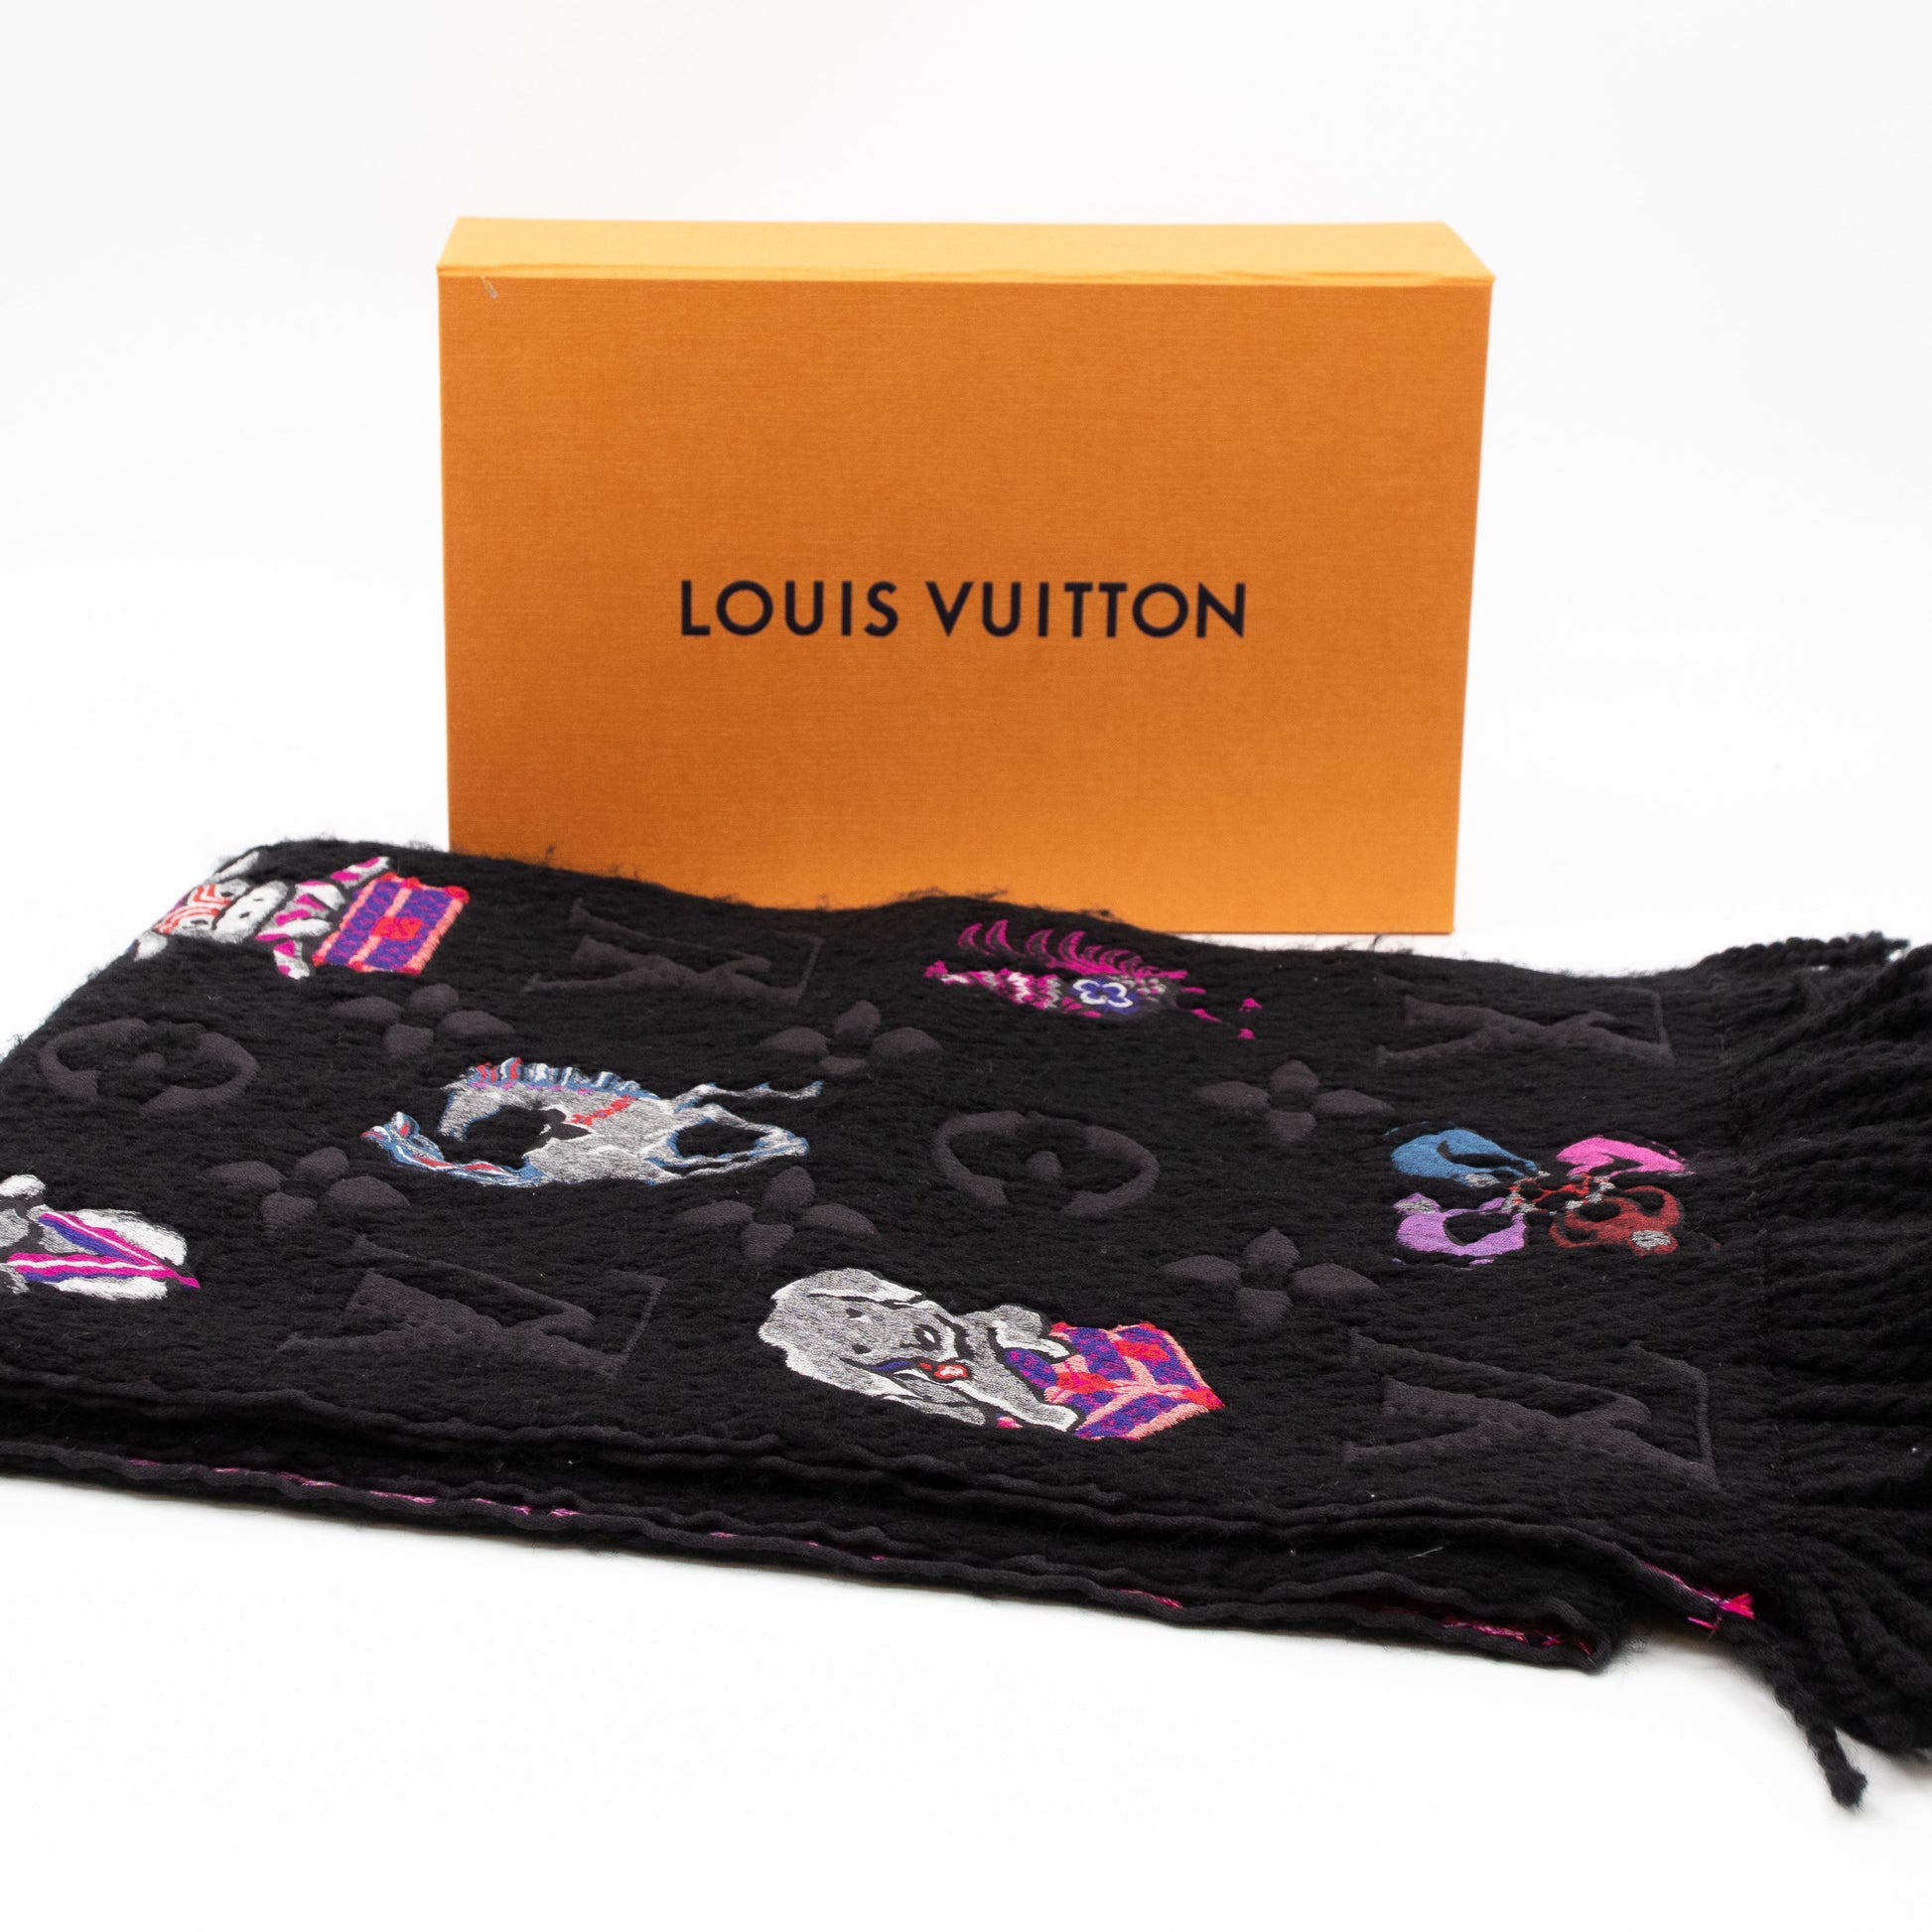 Authentic Louis Vuitton SUPERSTITION LOGOMANIA